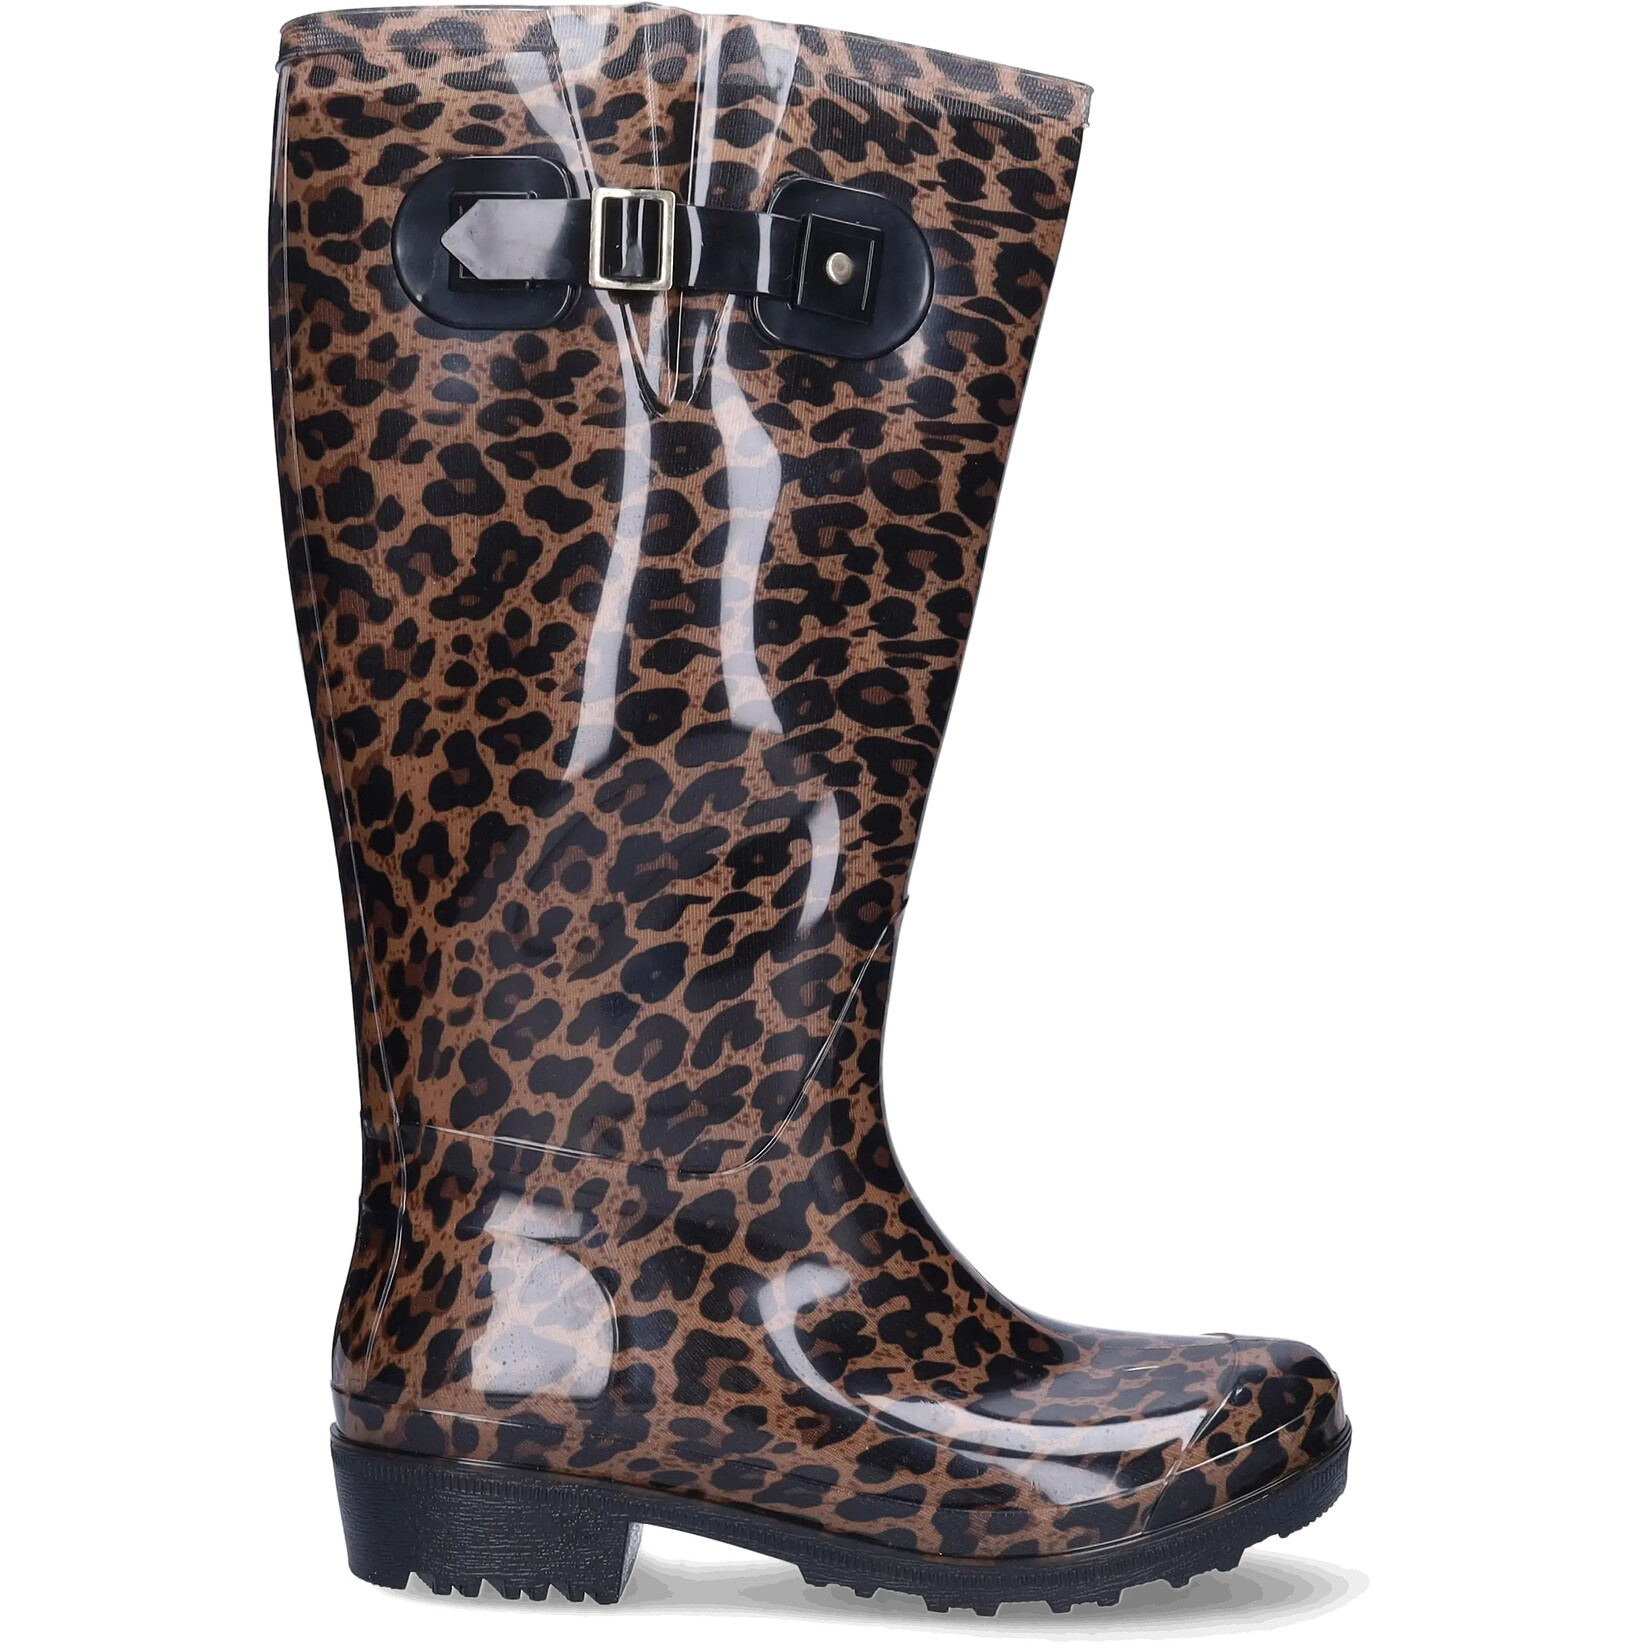 JJ Footwear Wellies - Brown/Beige leopard